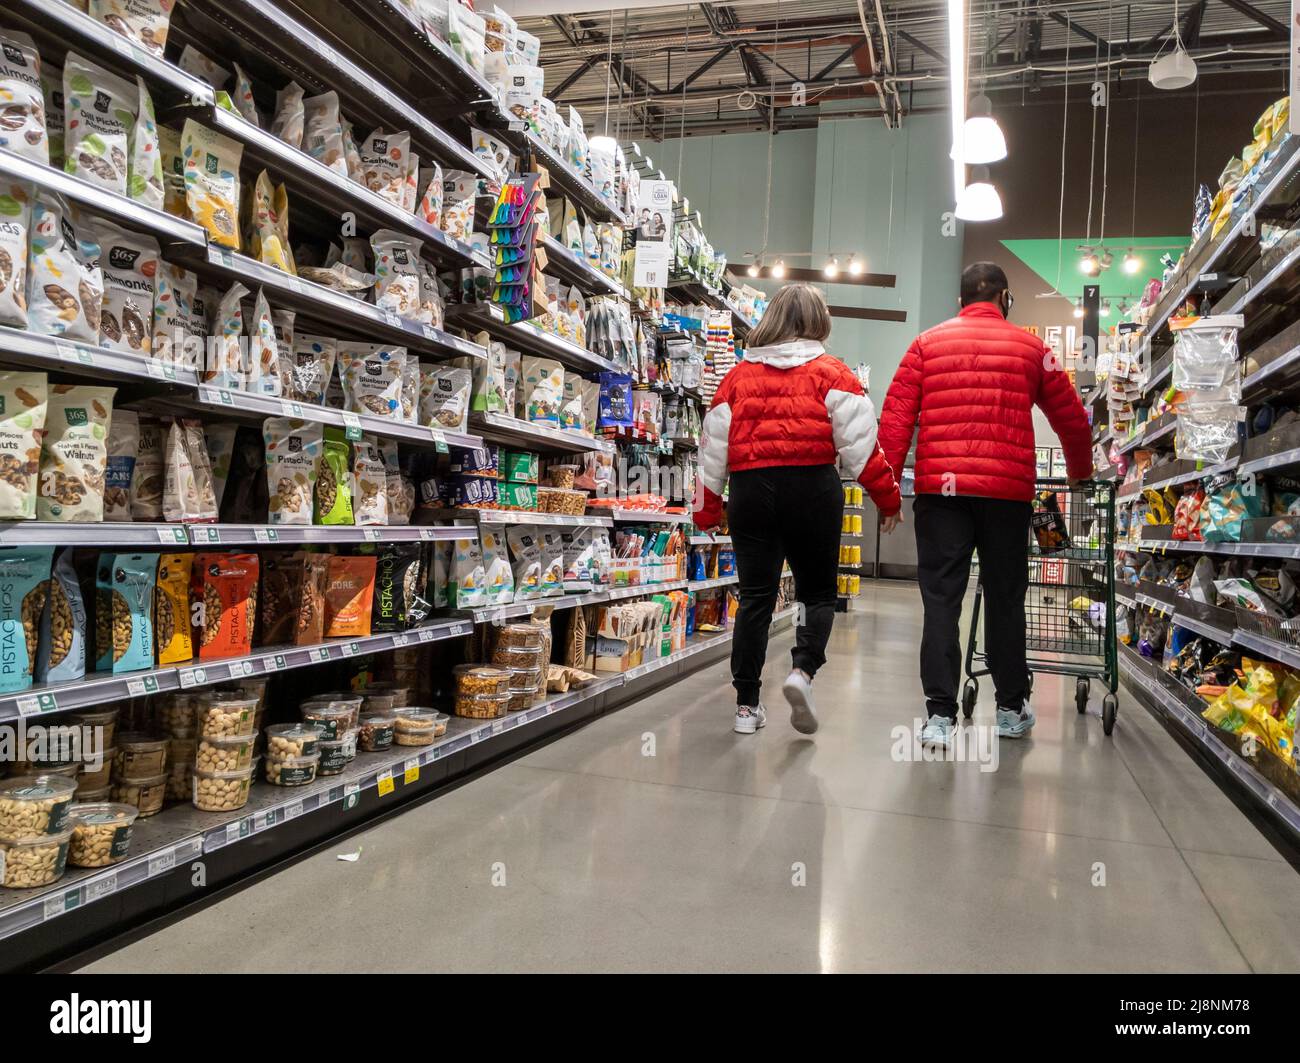 Kirkland, WA USA - ca. Februar 2022: Blick auf ein süßes Paar in passenden roten Jacken, das sich gegenseitig hält, während sie einen Whole Foods Market durchstöbern. Stockfoto